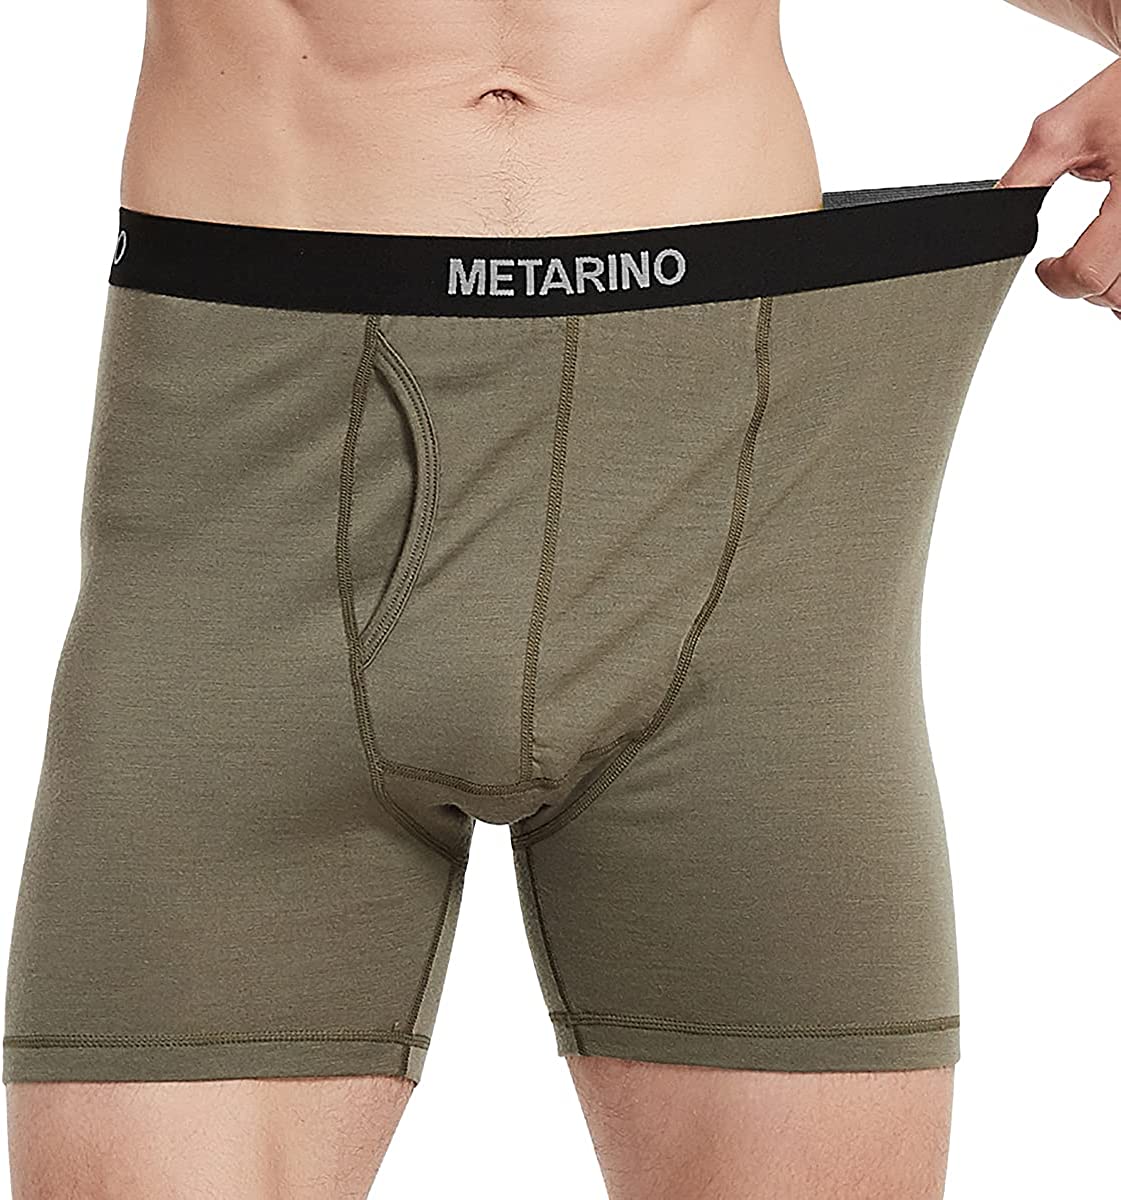 Metarino 2 Pack Women's Athletic Underwear Panties Soft Merino